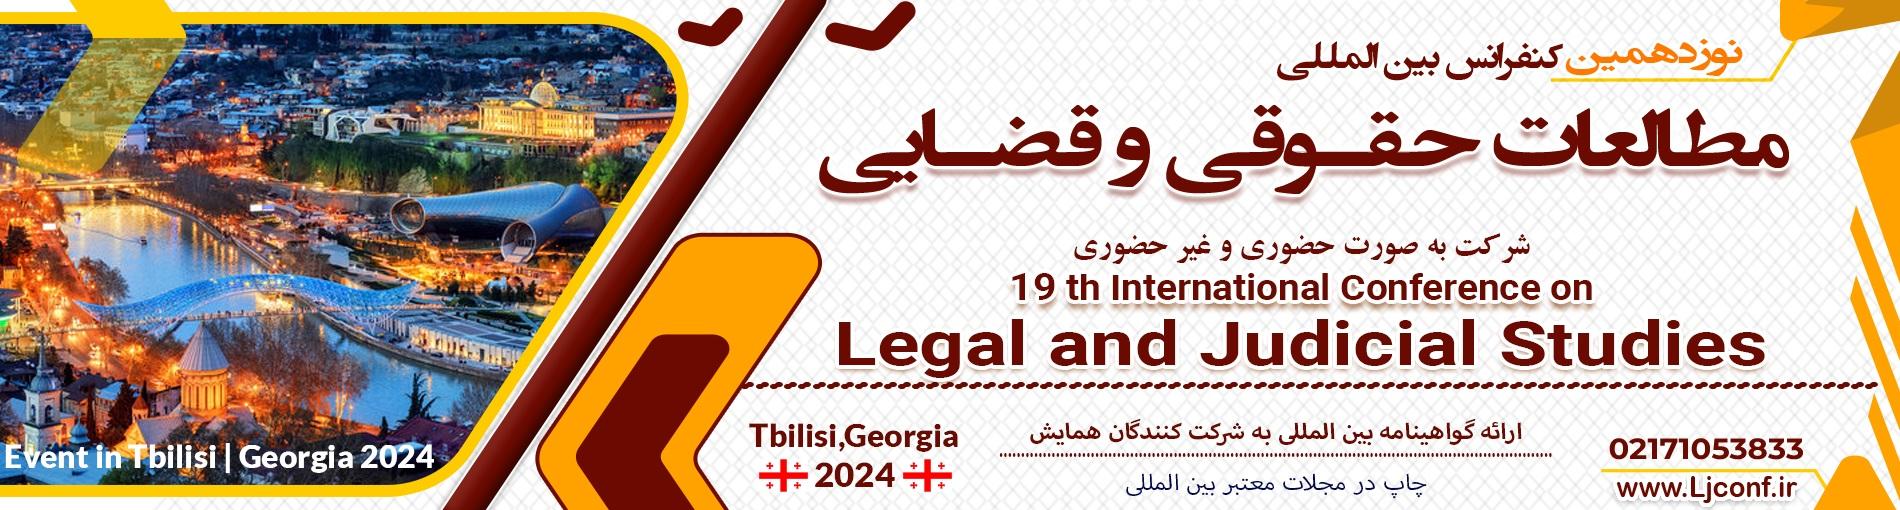 همایش بین المللی مطالعات حقوقی و قضایی